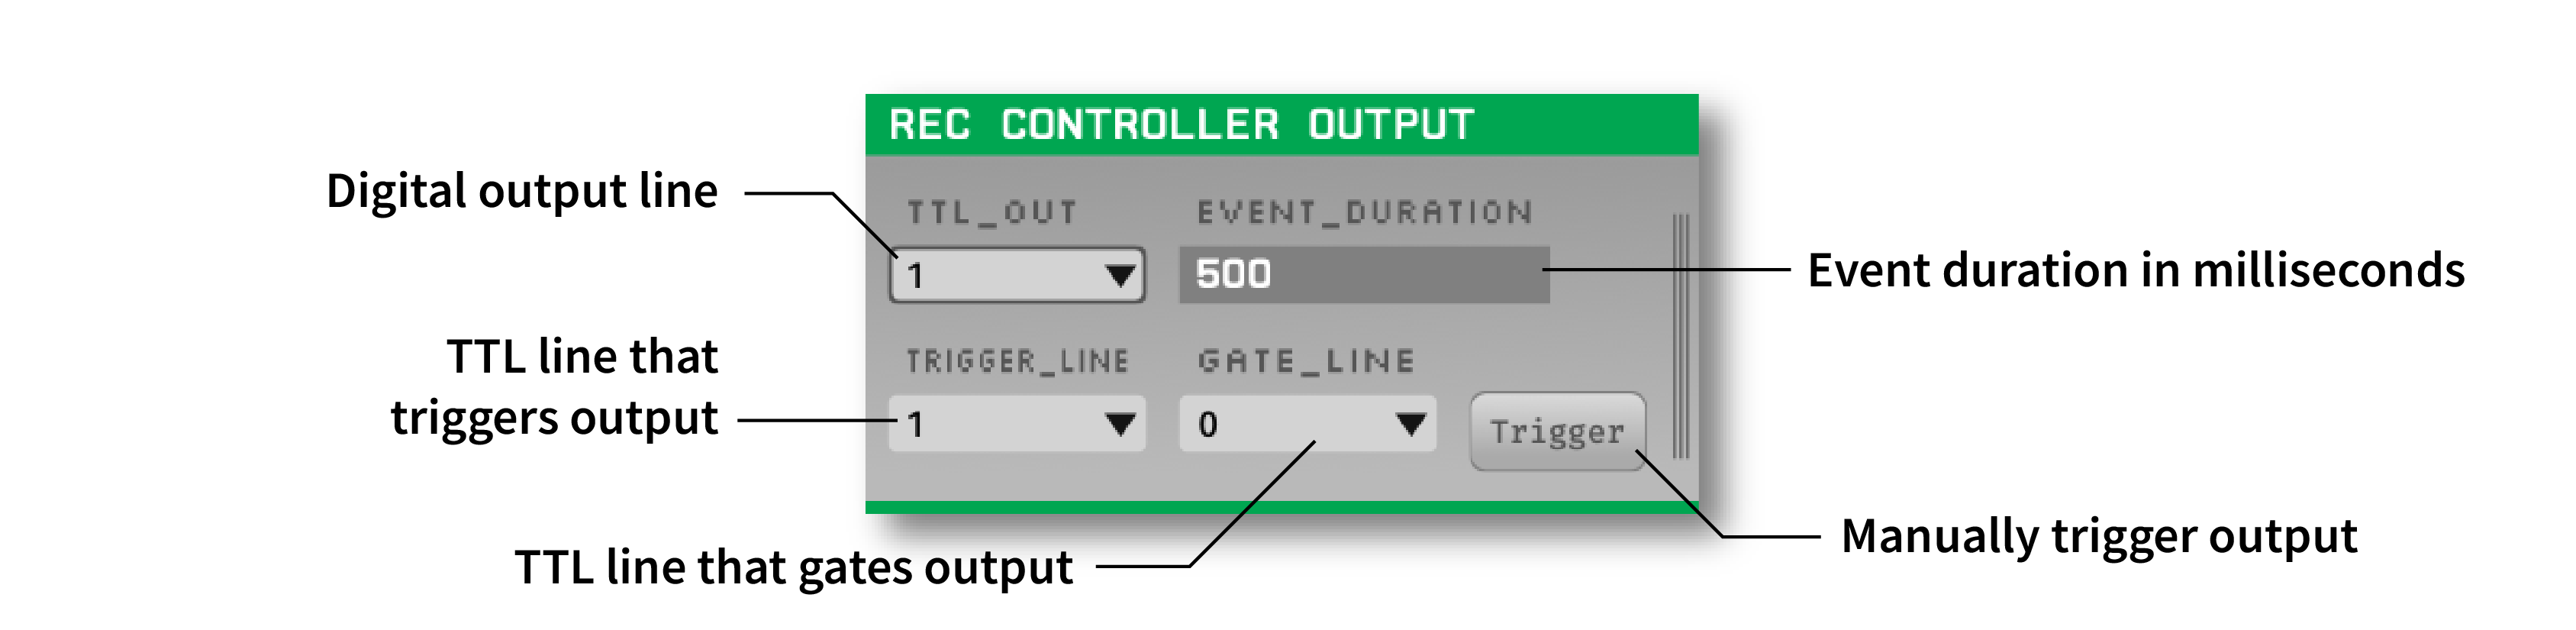 Annotated Rec Controller Output plugin